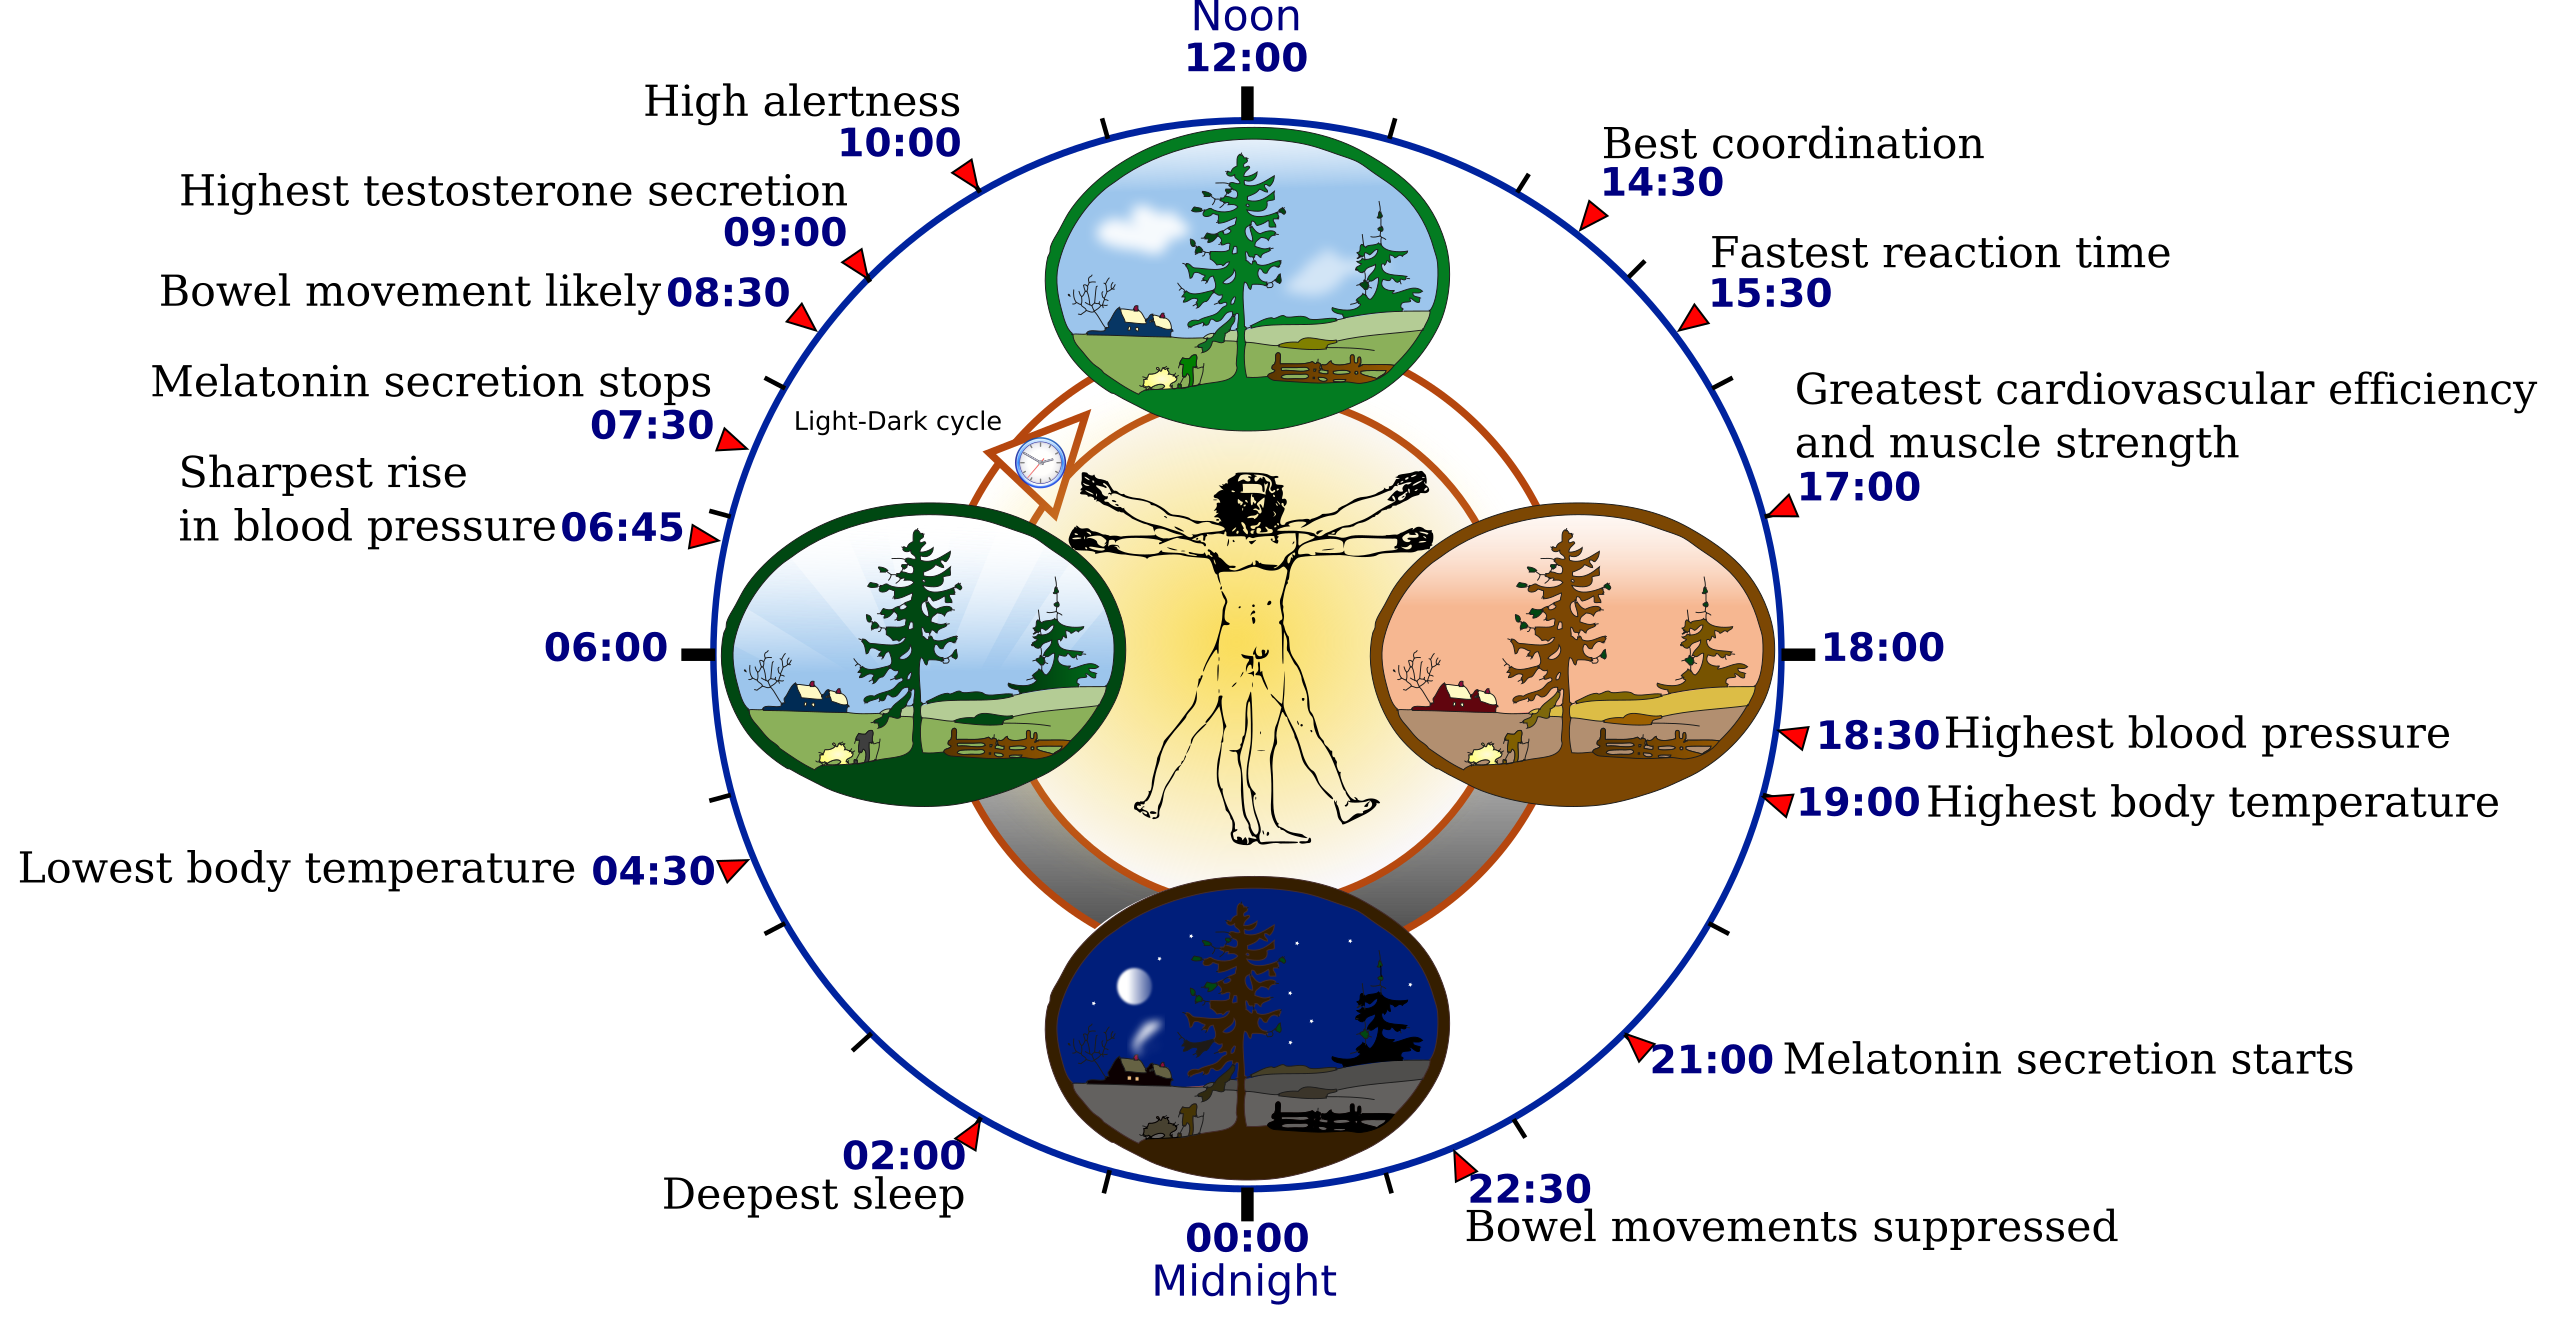 Diagram showing human biological rhythms